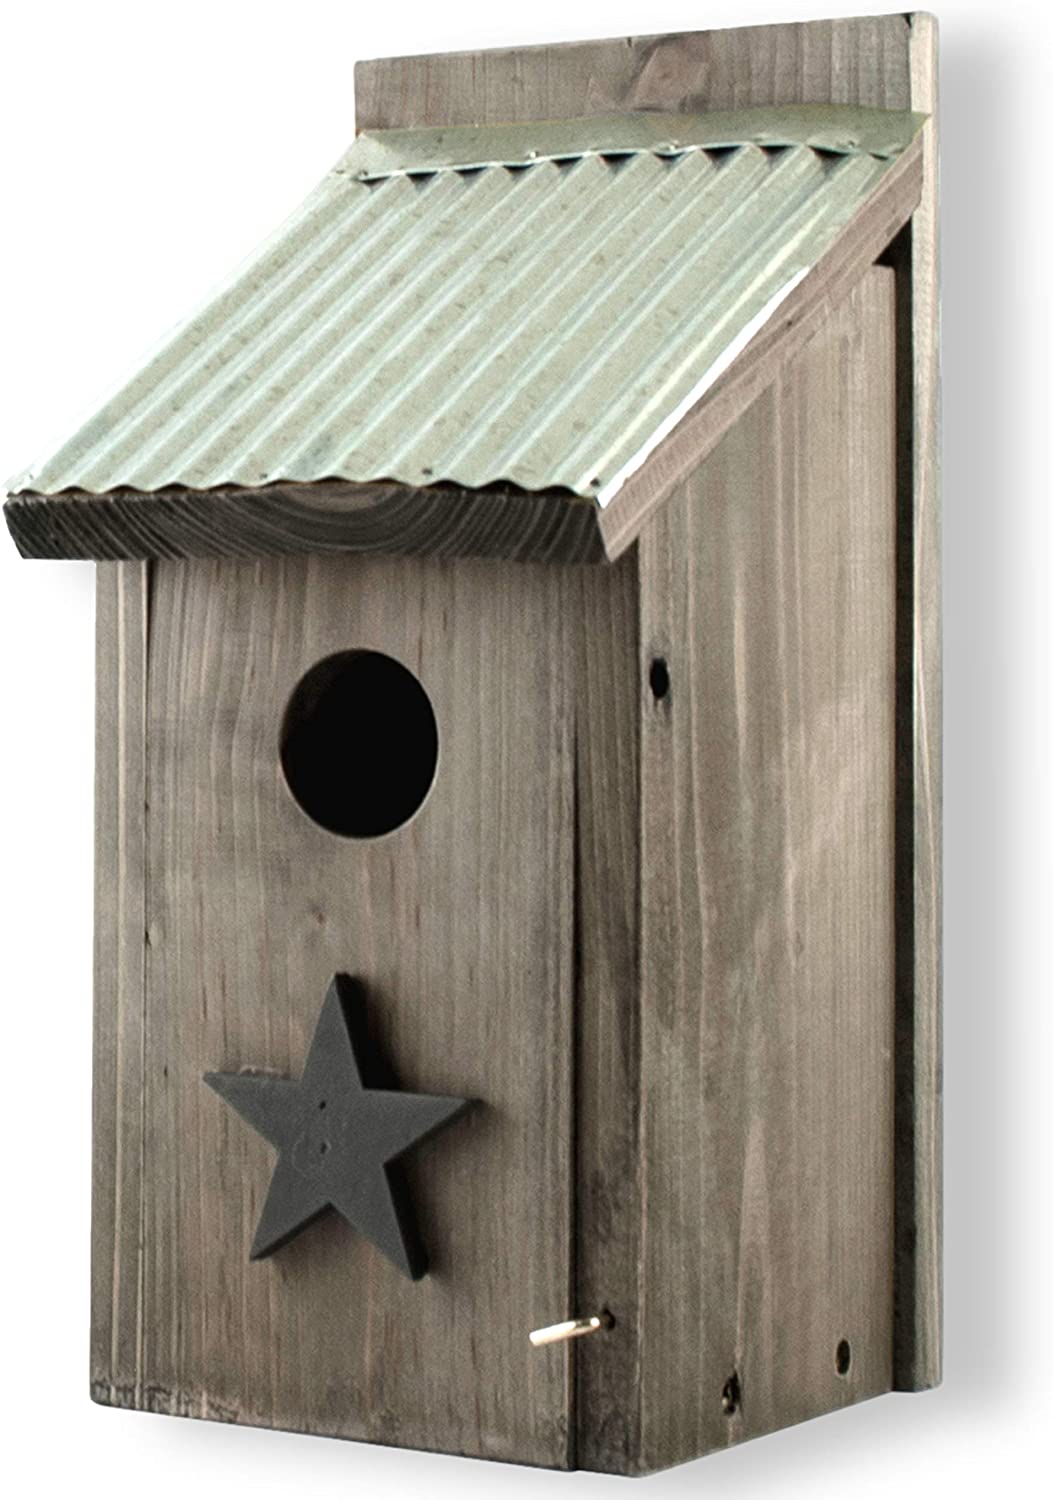 Bird house bluebird